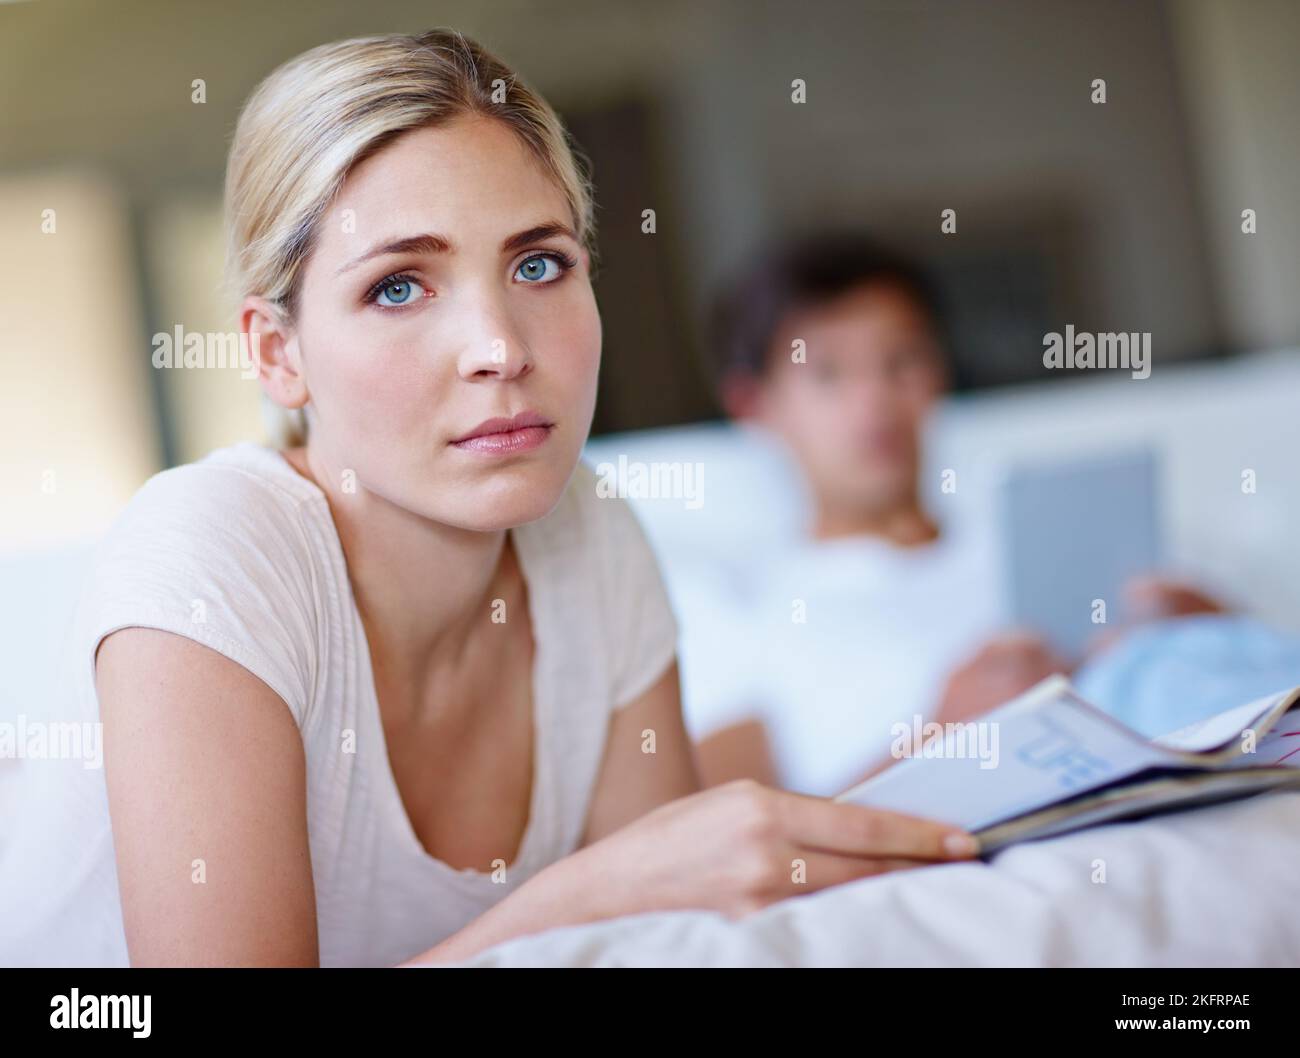 Zusammen, aber allein. Eine traurige junge Frau, die im Bett liegt und ein Magazin liest, während ihr Mann im Hintergrund ein digitales Tablet benutzt. Stockfoto